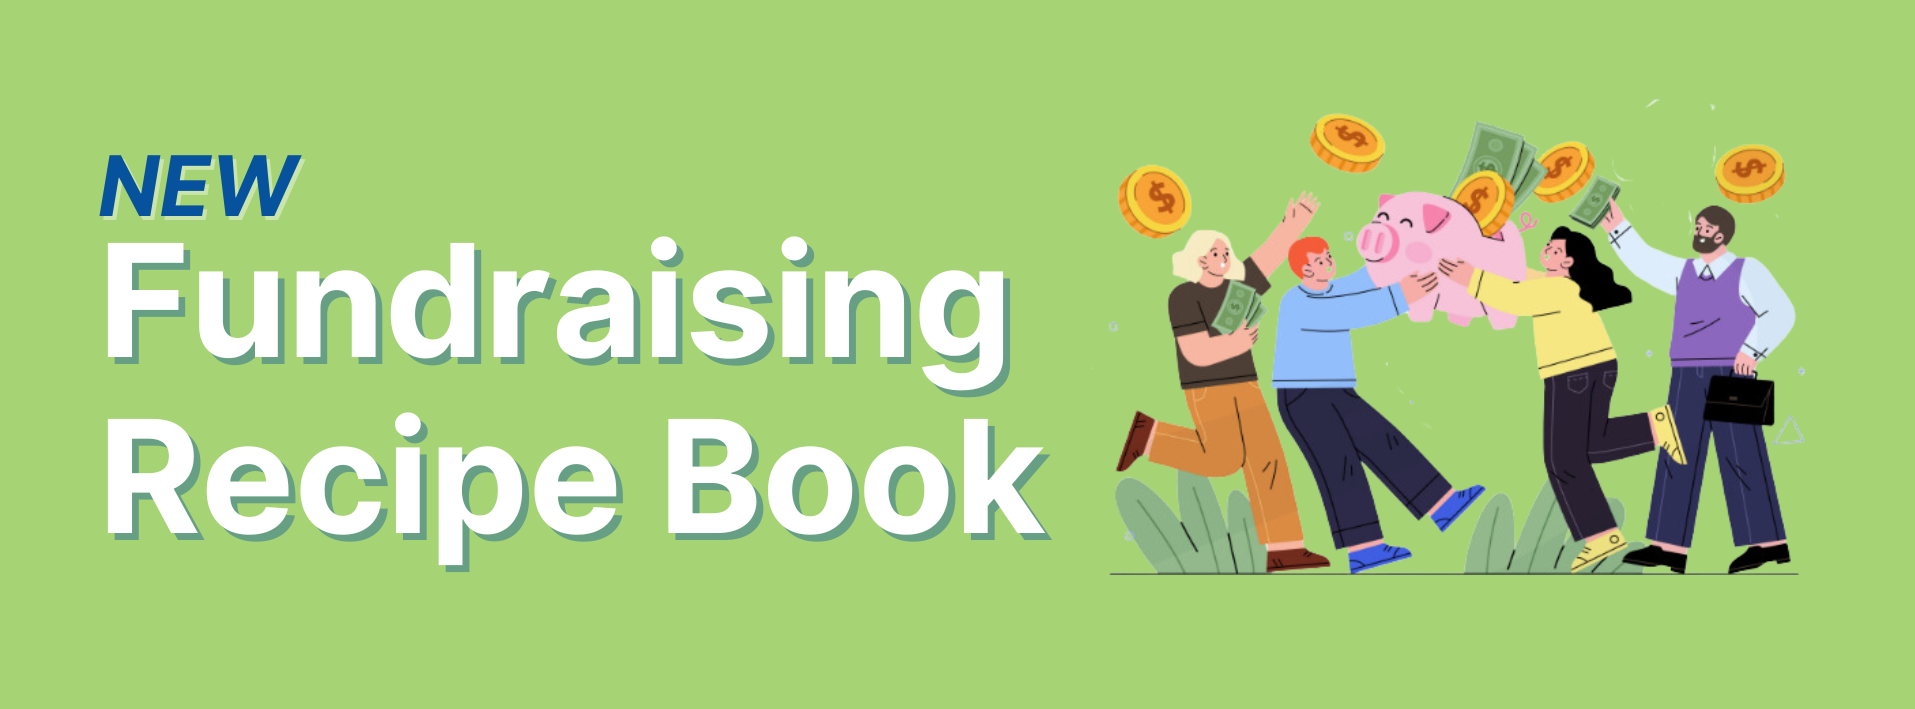 fundraising recipe book